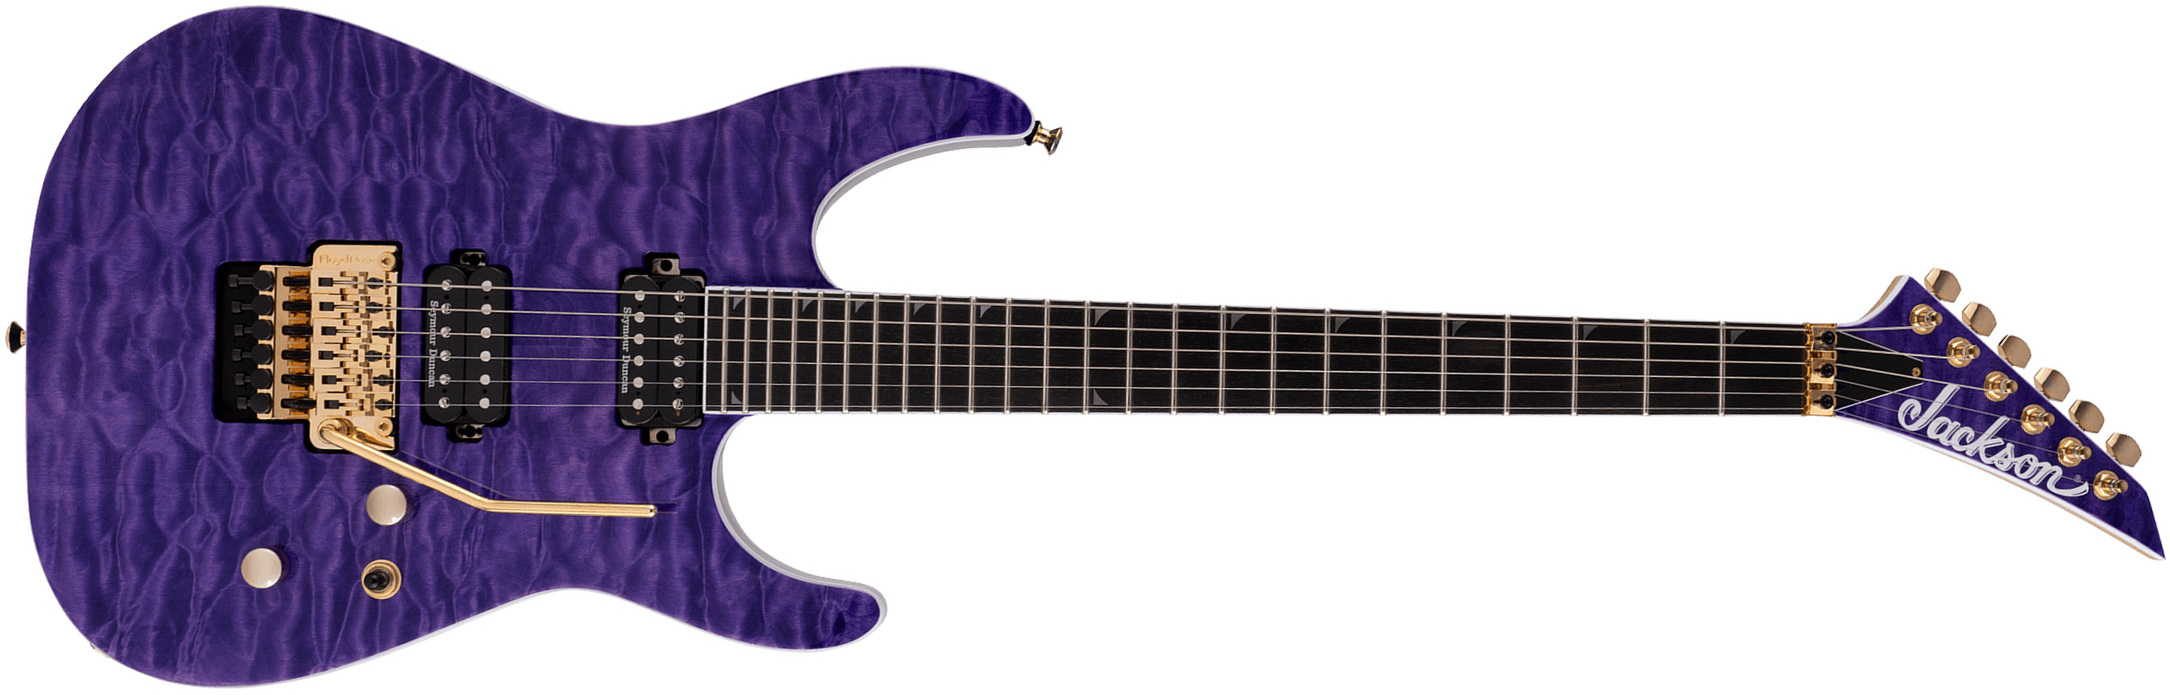 Jackson Soloist Sl2q Mah Pro 2h Seymour Duncan Fr Eb - Transparent Purple - Guitarra eléctrica con forma de str. - Main picture